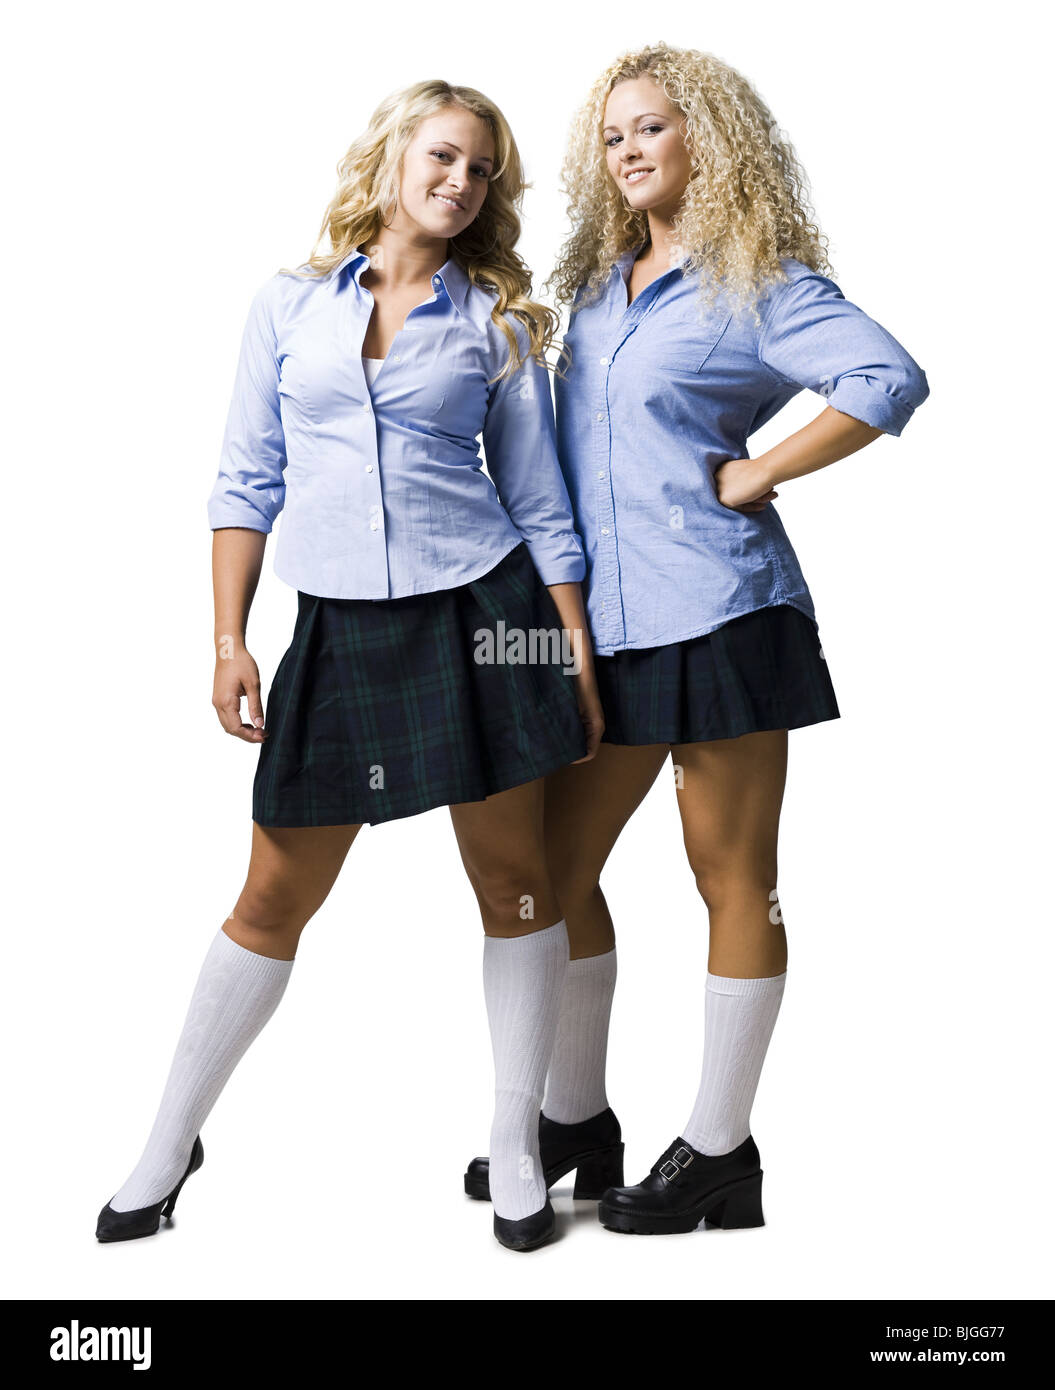 Las mujeres vestidas con trajes niña de la escuela Fotografía de stock -  Alamy